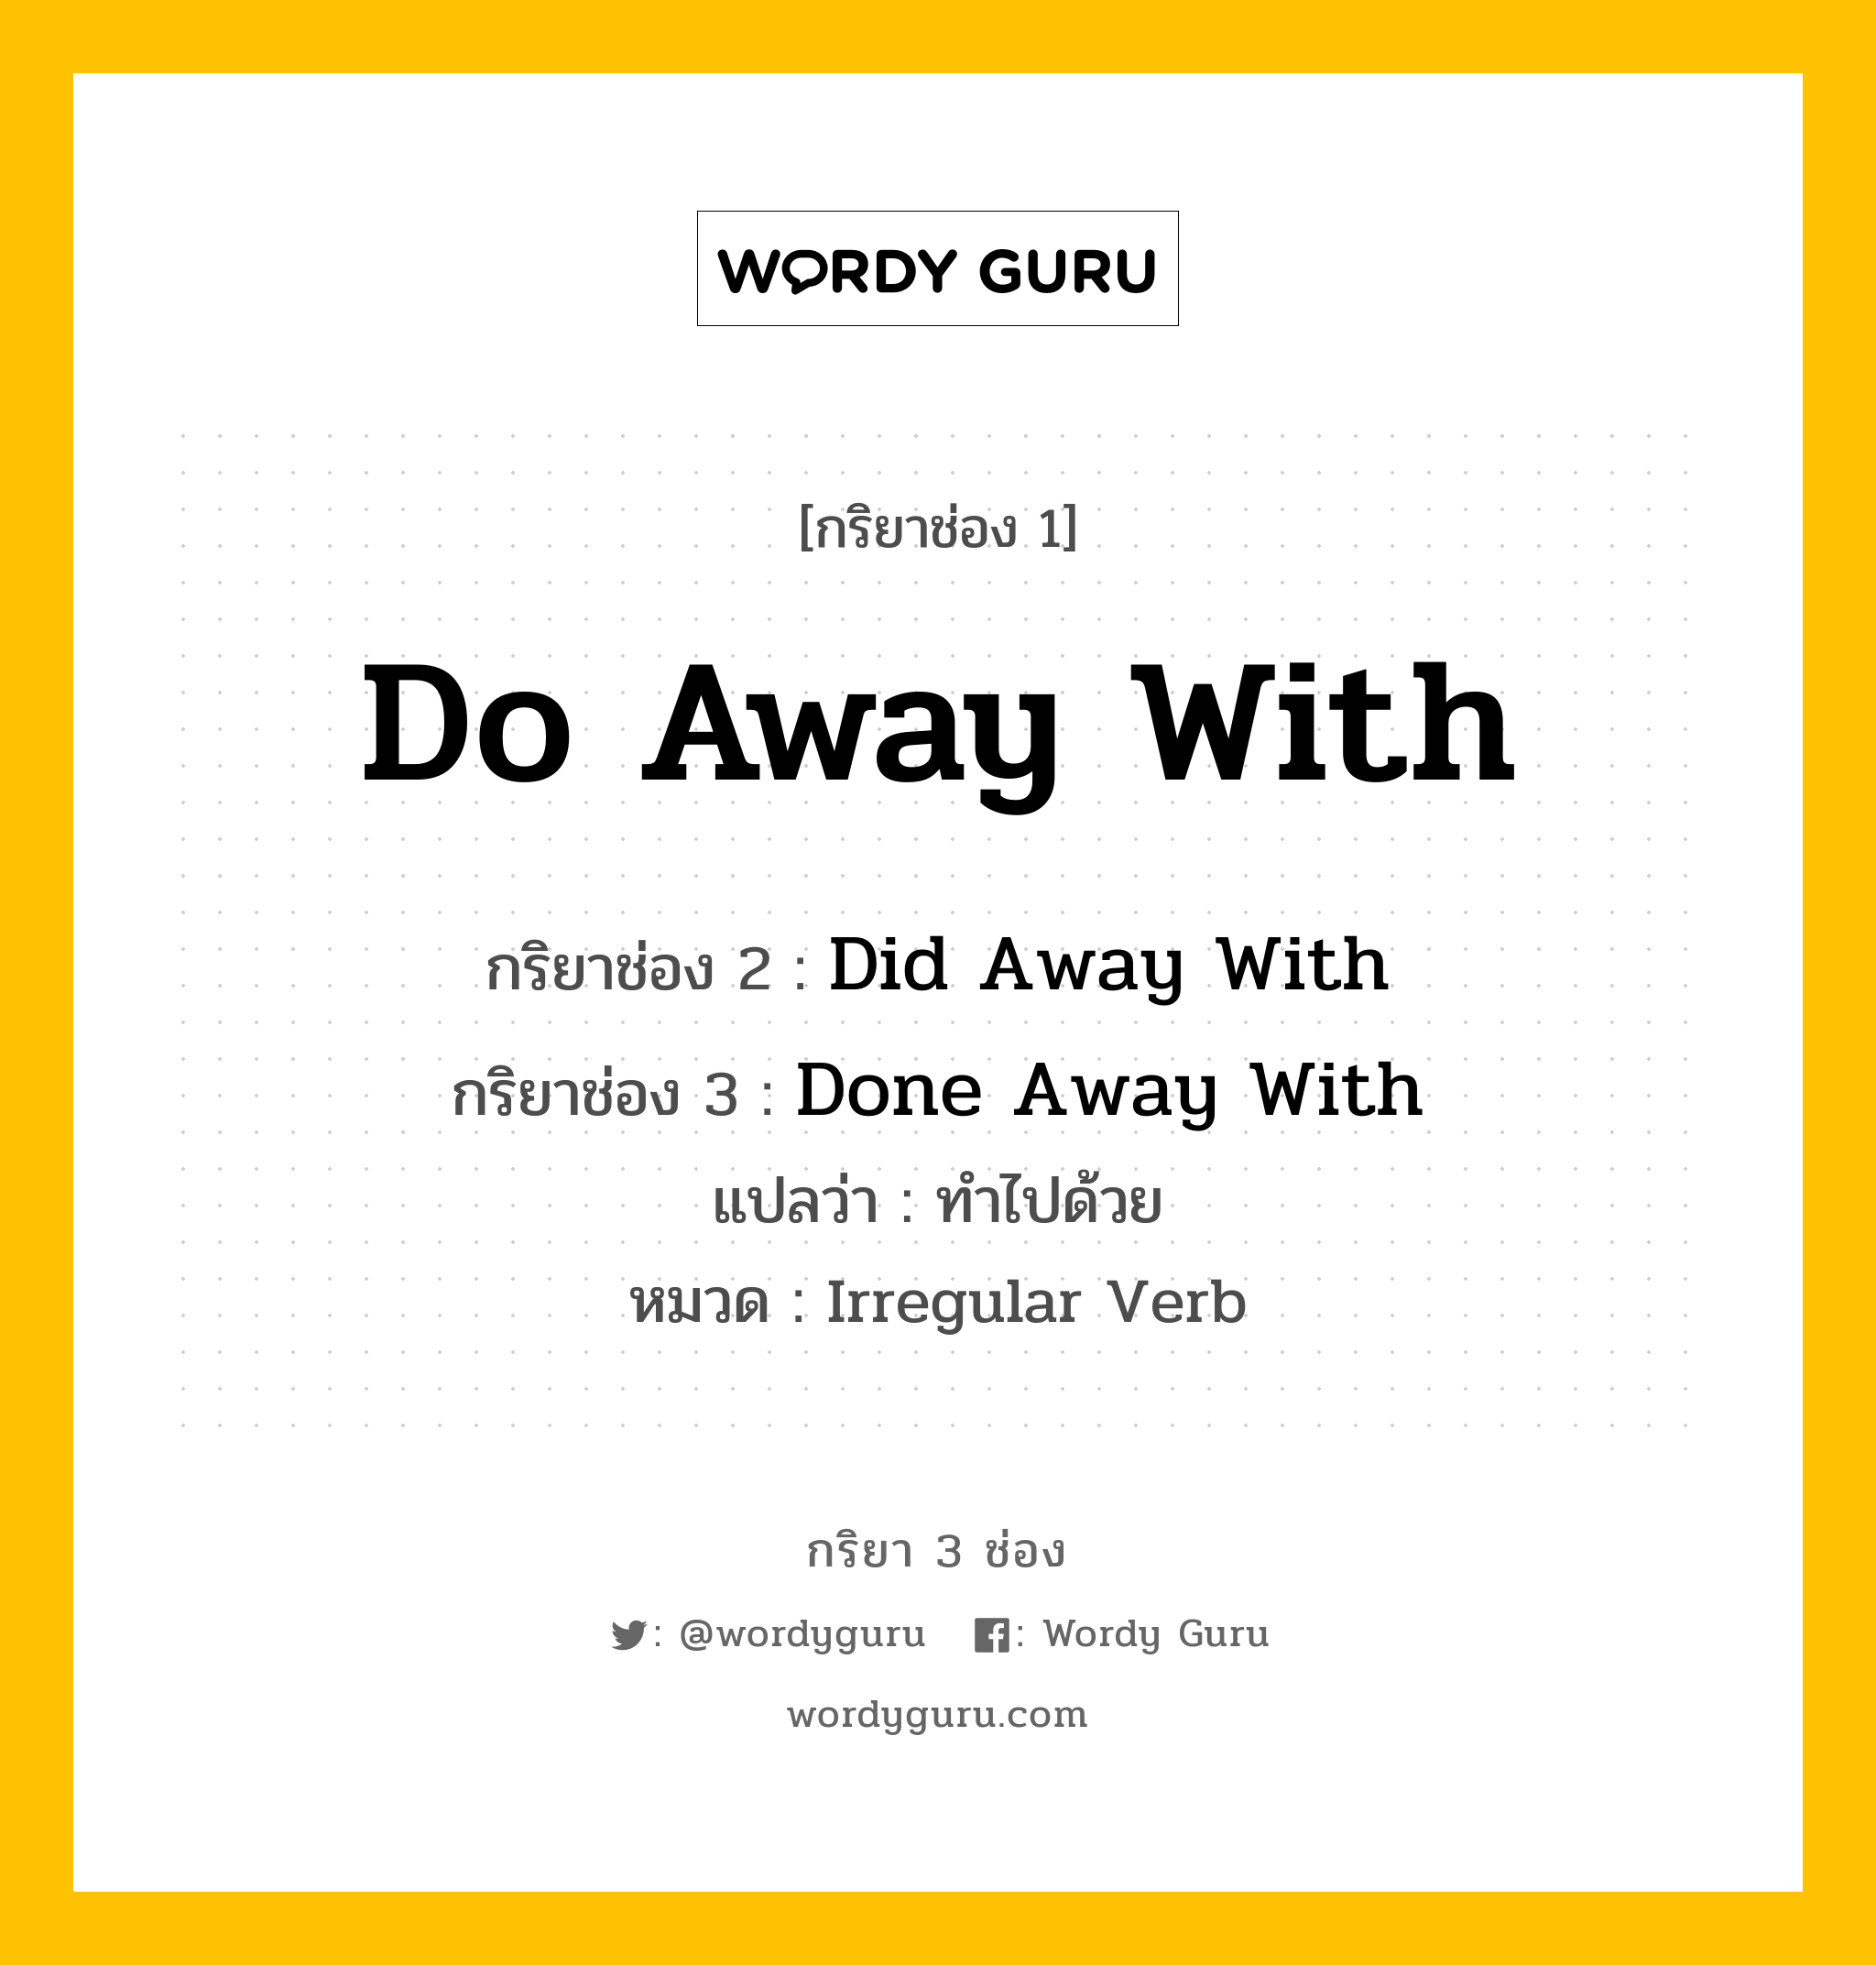 กริยา 3 ช่อง ของ Do Away With คืออะไร?, กริยาช่อง 1 Do Away With กริยาช่อง 2 Did Away With กริยาช่อง 3 Done Away With แปลว่า ทำไปด้วย หมวด Irregular Verb หมวด Irregular Verb